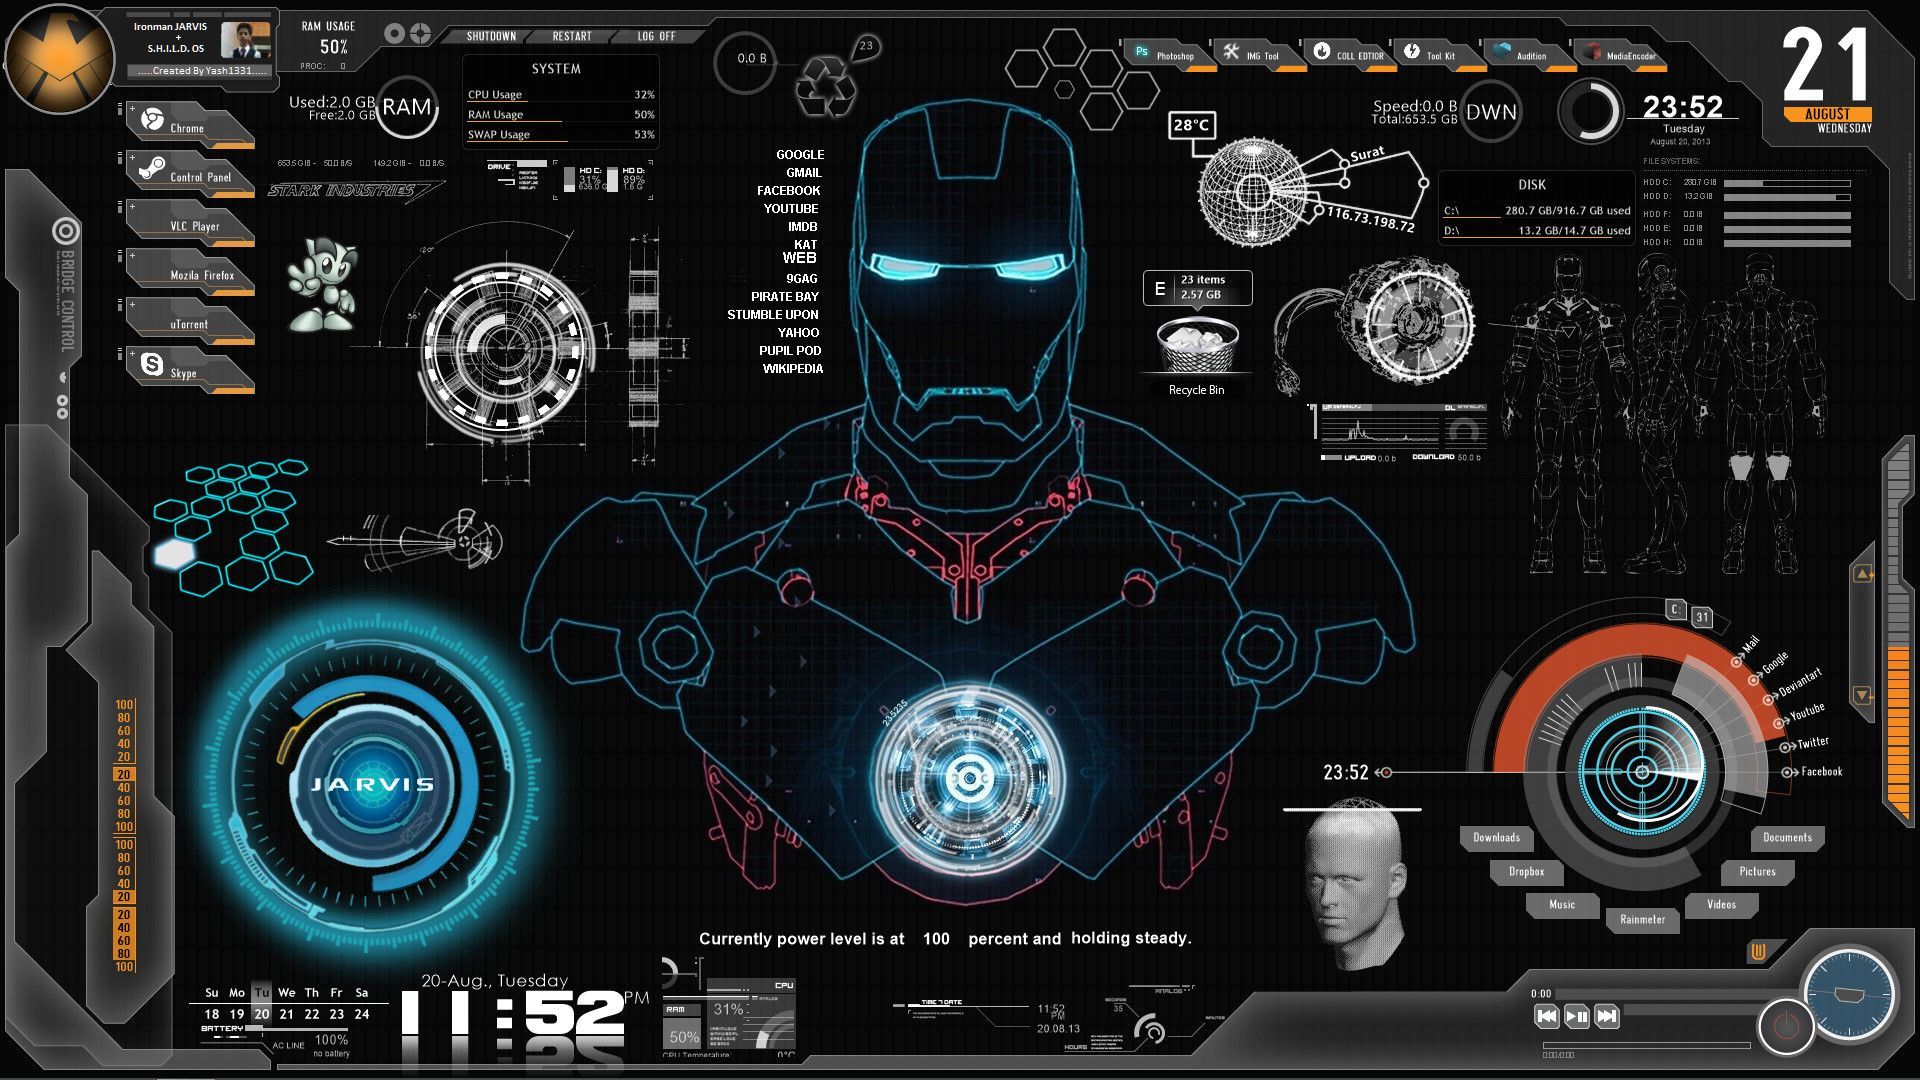 Iron Man Technology Wallpaper Free Iron Man Technology Background